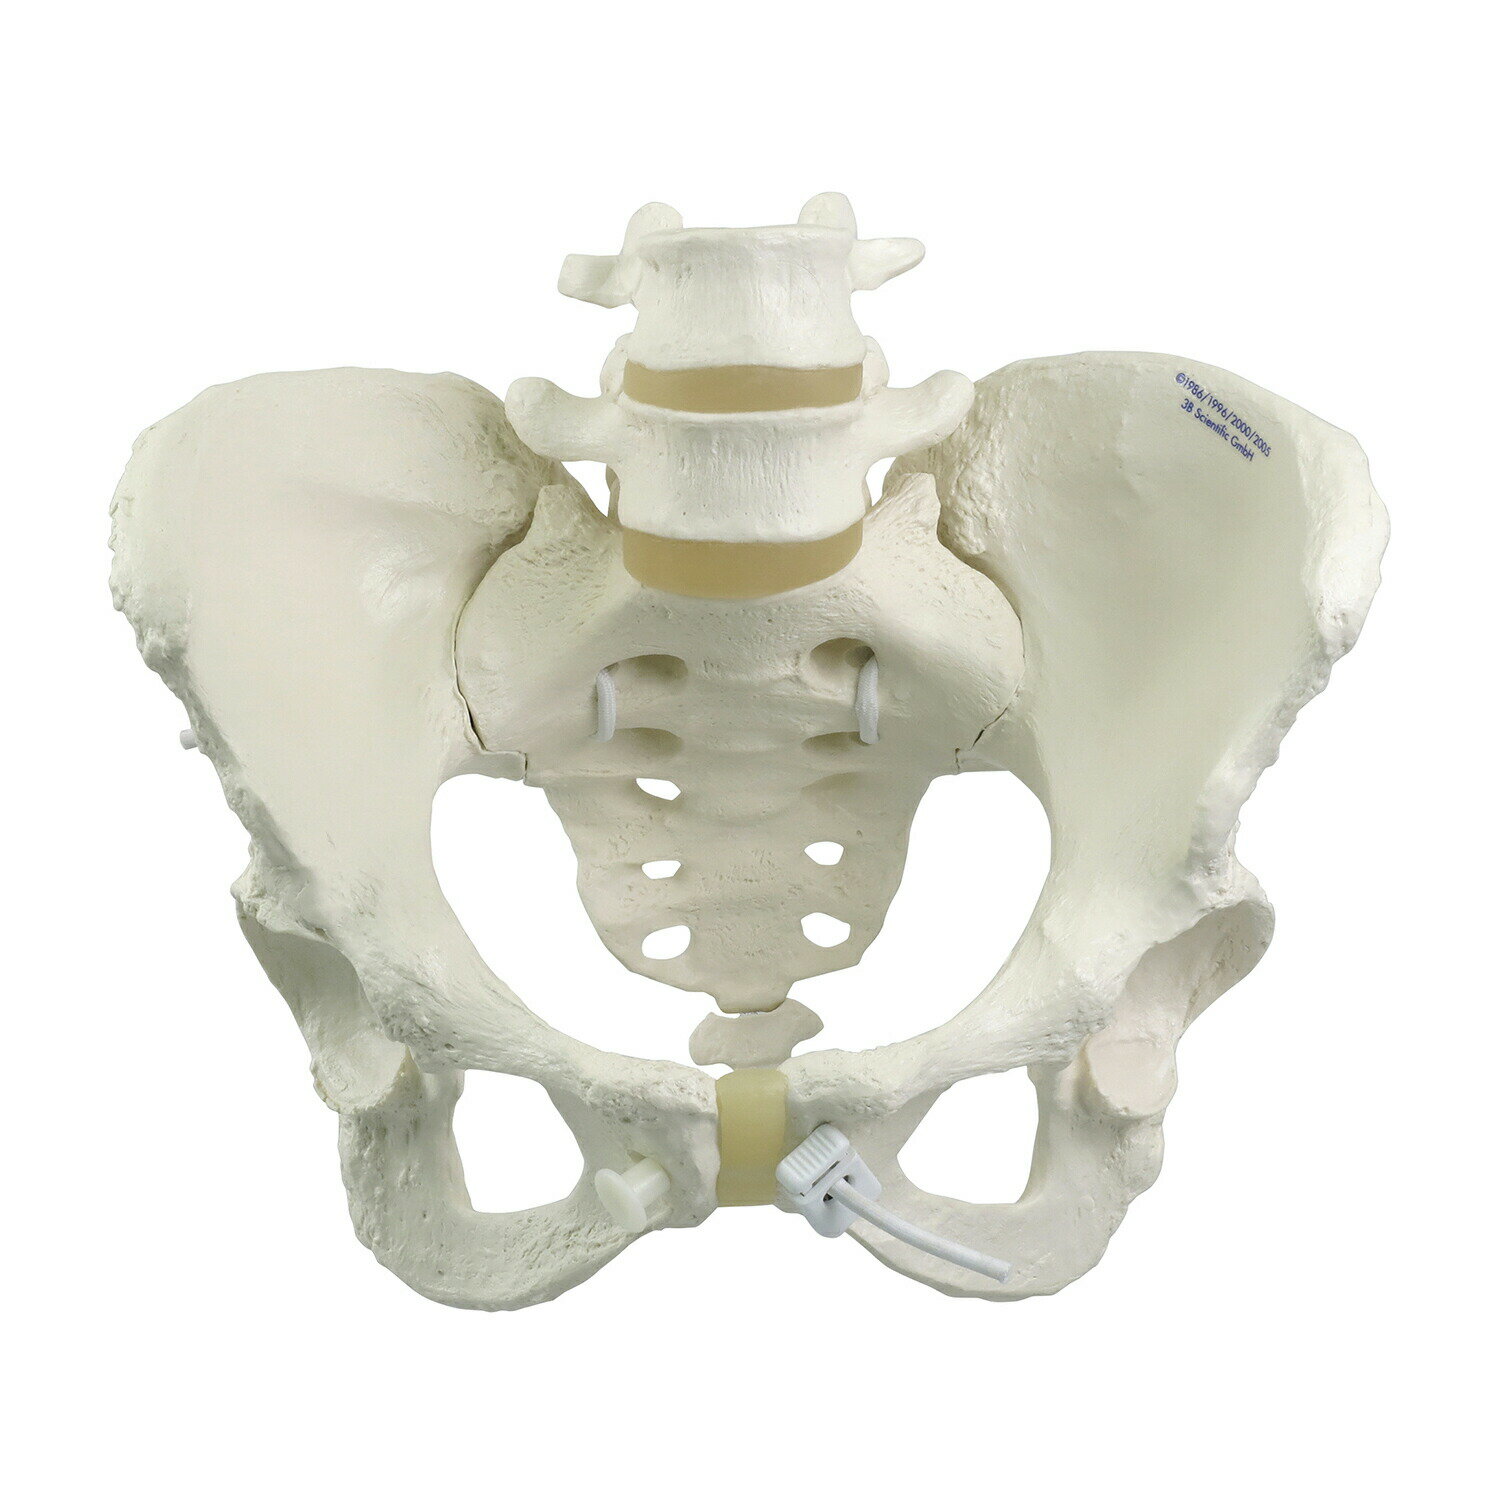 女性骨盤モデル 可動型 A61/1 骨盤モデル ...の商品画像